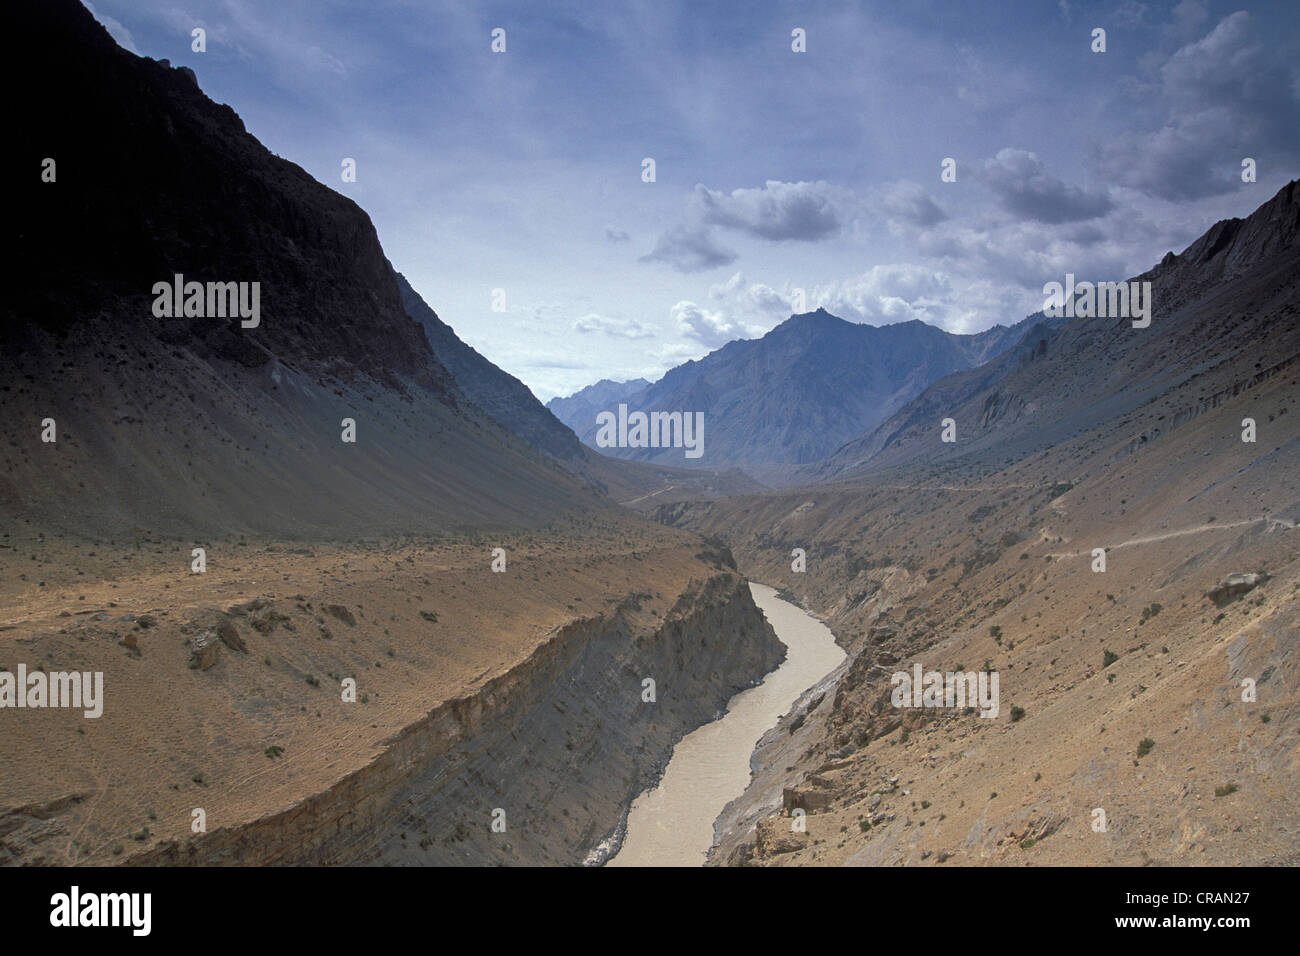 Près de la rivière Zanskar, Hanomil Zanskar, Ladakh, Himalaya indien, le Jammu-et-Cachemire, l'Inde du nord, Inde, Asie Banque D'Images